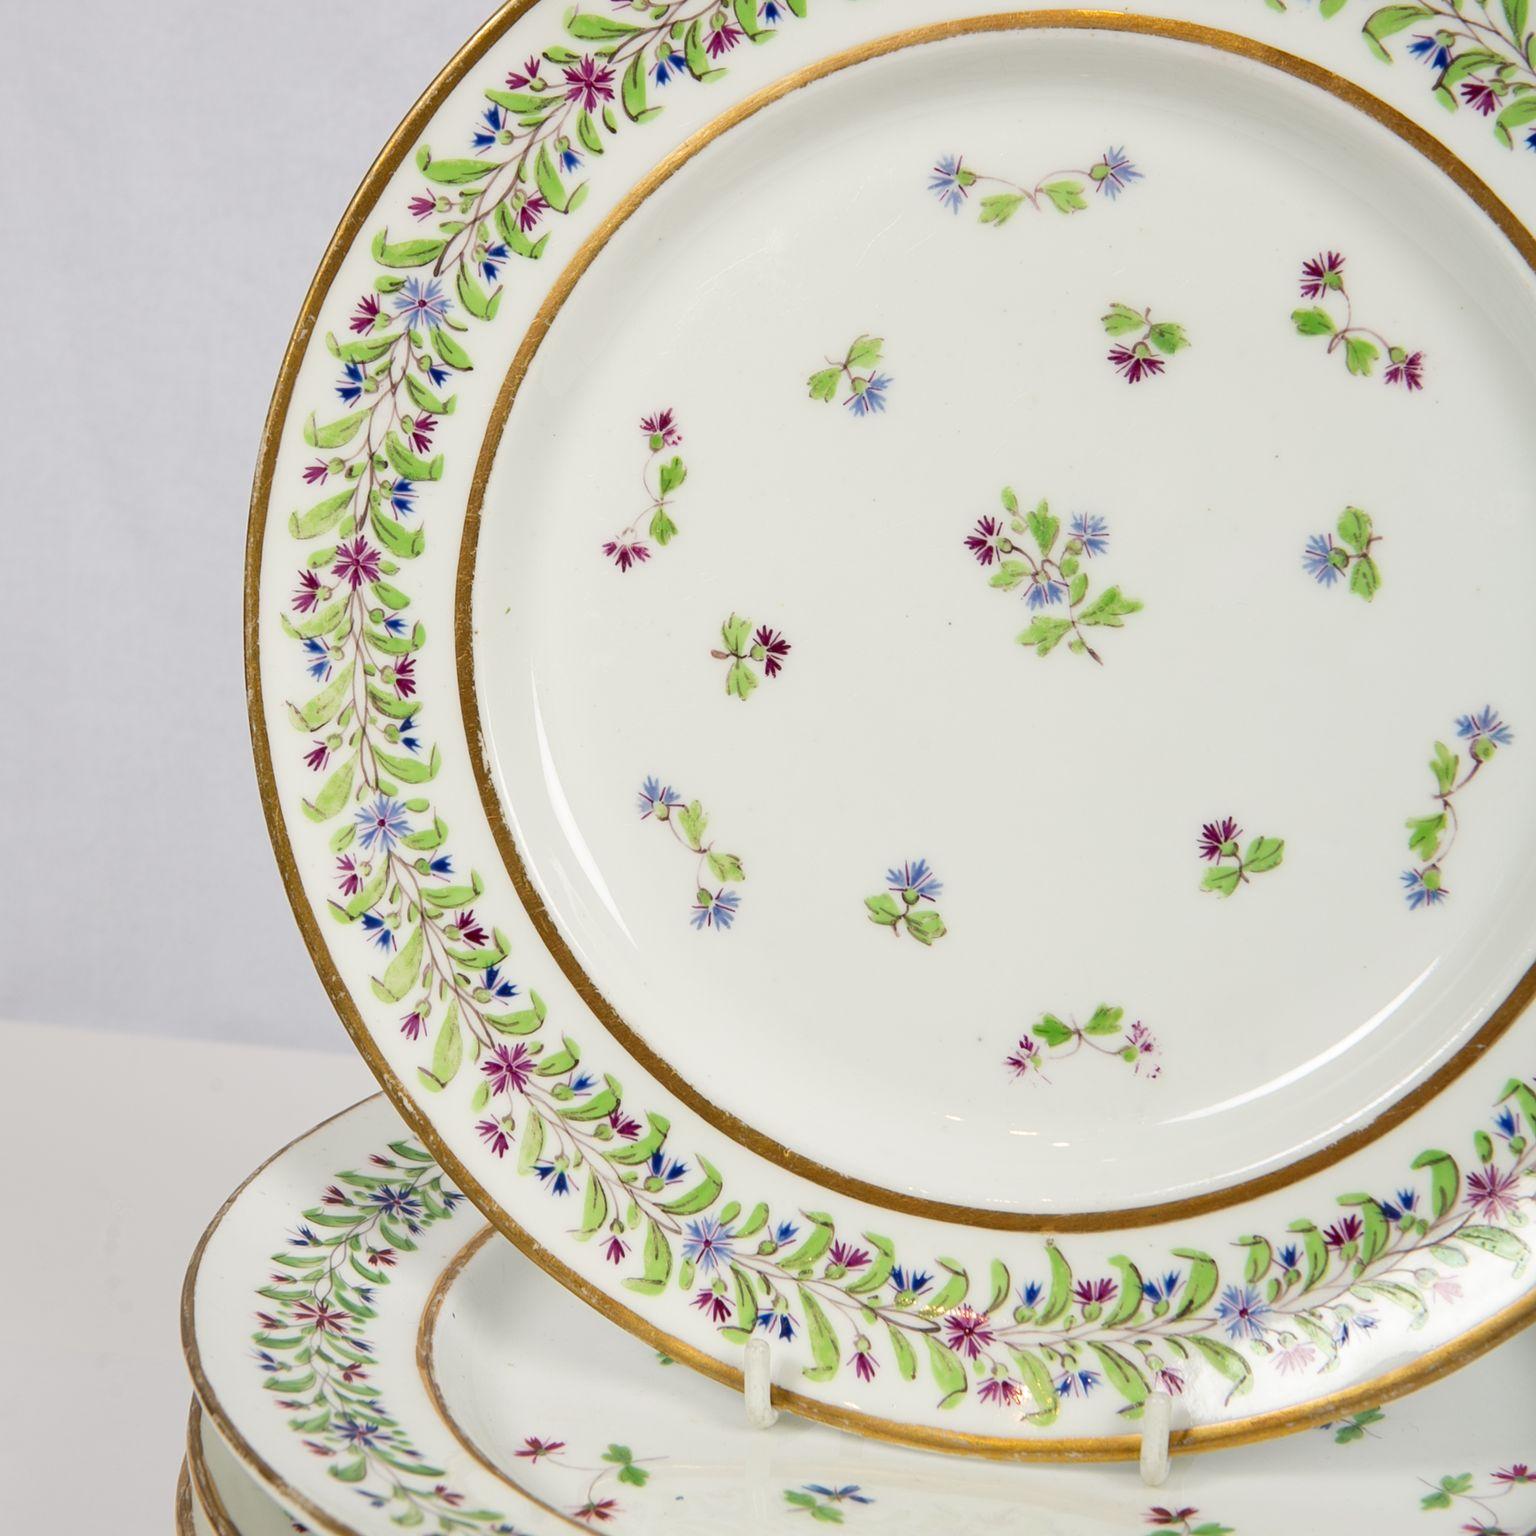 Nous avons le plaisir de vous proposer cet ensemble de douze jolis plats anciens en porcelaine décorés du motif 